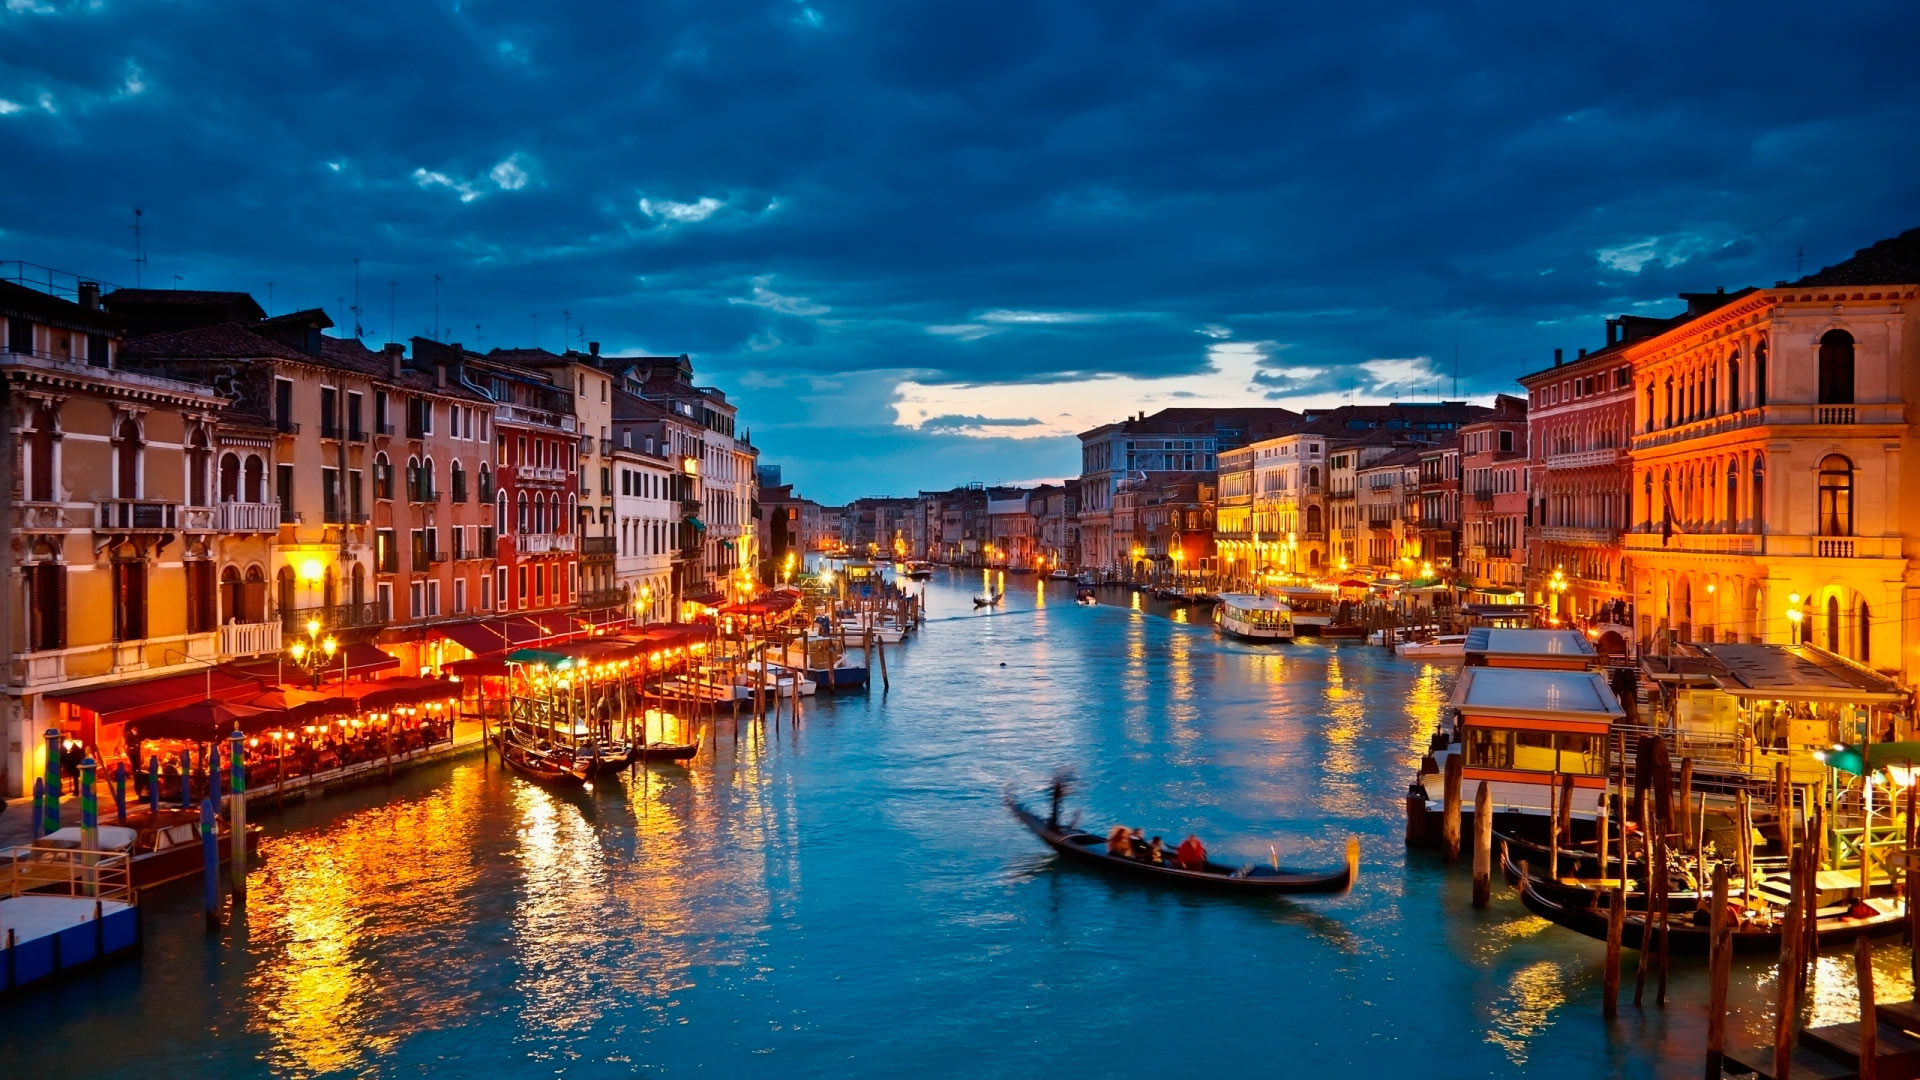 Miễn phí tải xuống hình nền Venice Italy độ phân giải cao [1920x1080] và giải tỏa bản thân với hình ảnh tuyệt đẹp của Venice Italy. Hãy thưởng thức những hình ảnh đẹp nhất của thành phố biển xinh đẹp này trên thiết bị của bạn.